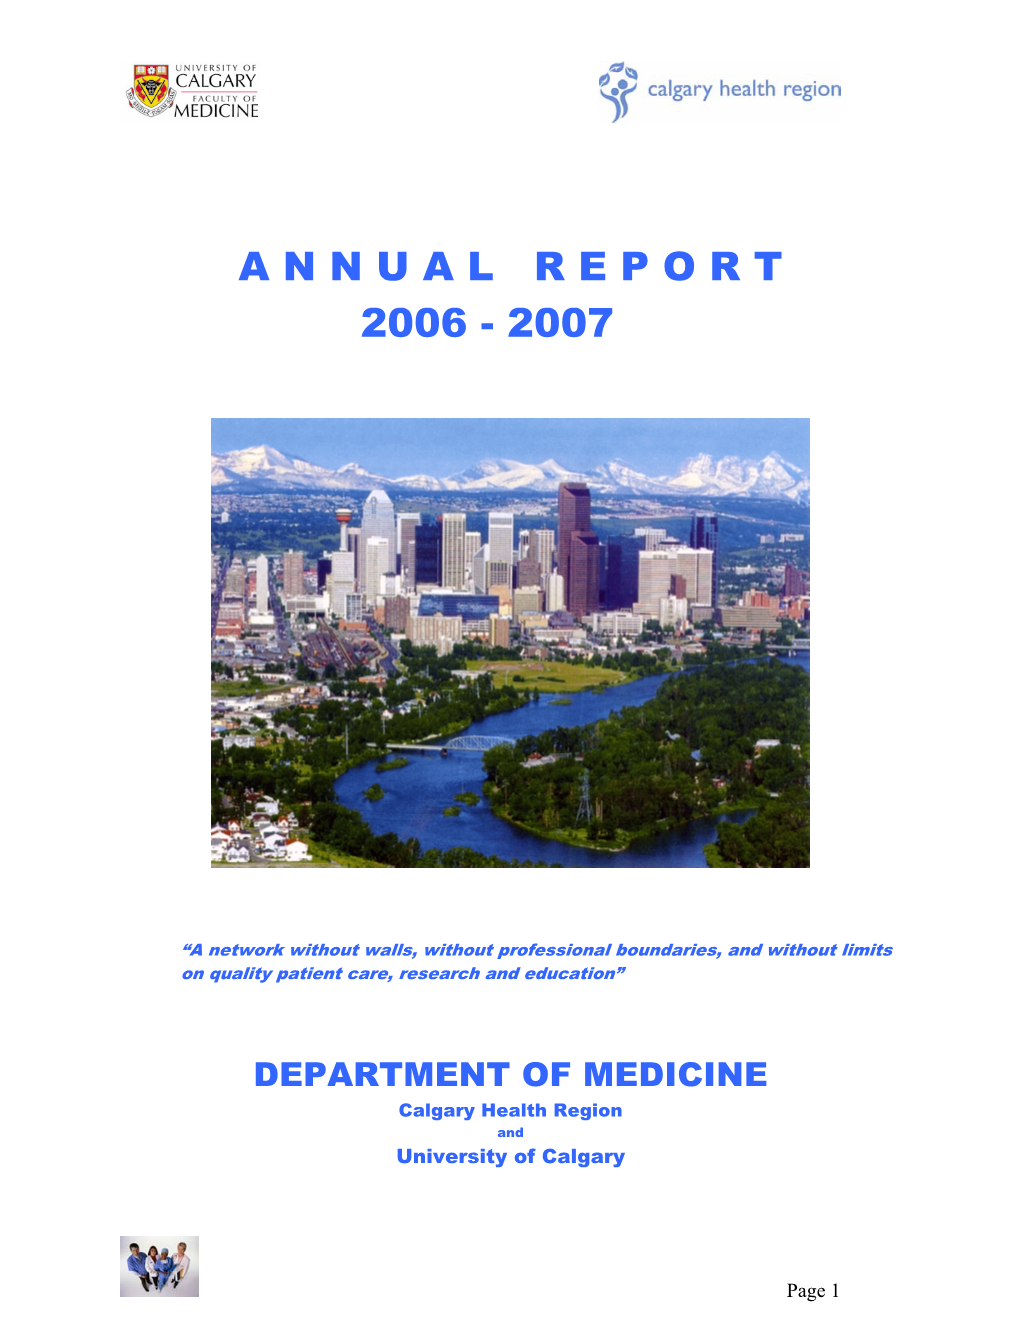 Dom Annual Report 06 07